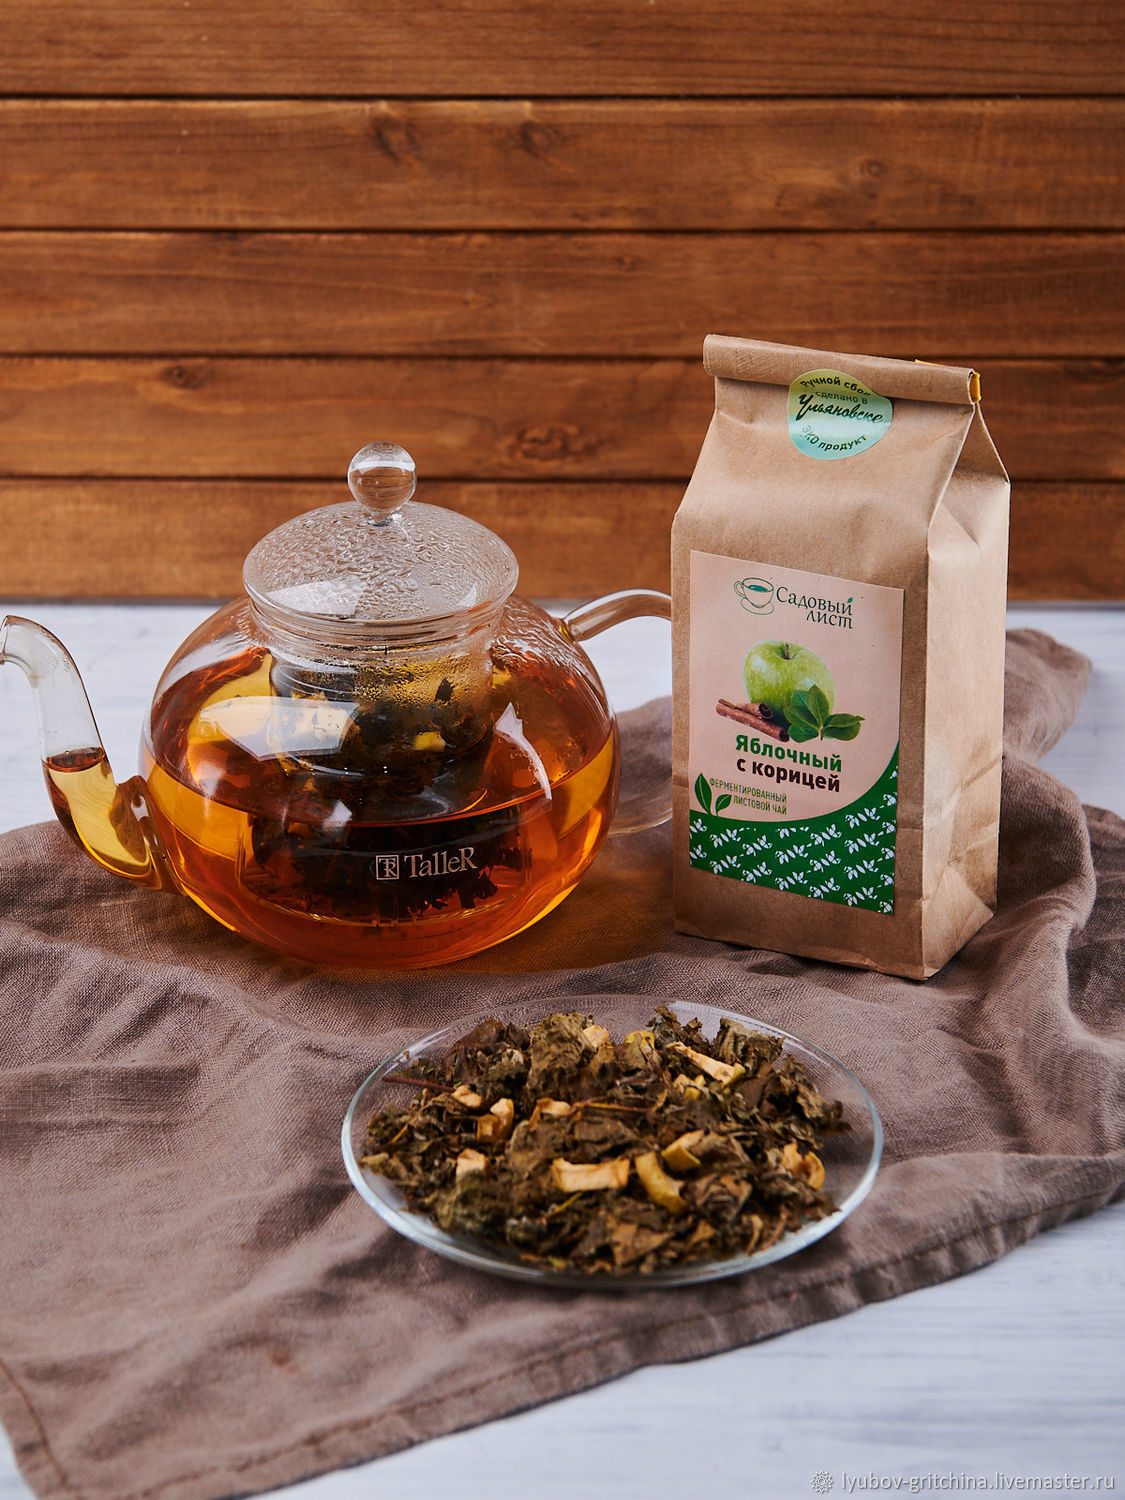 Чай листовой Яблочный с корицей тонизирующий, Чай и кофе, Ульяновск,  Фото №1